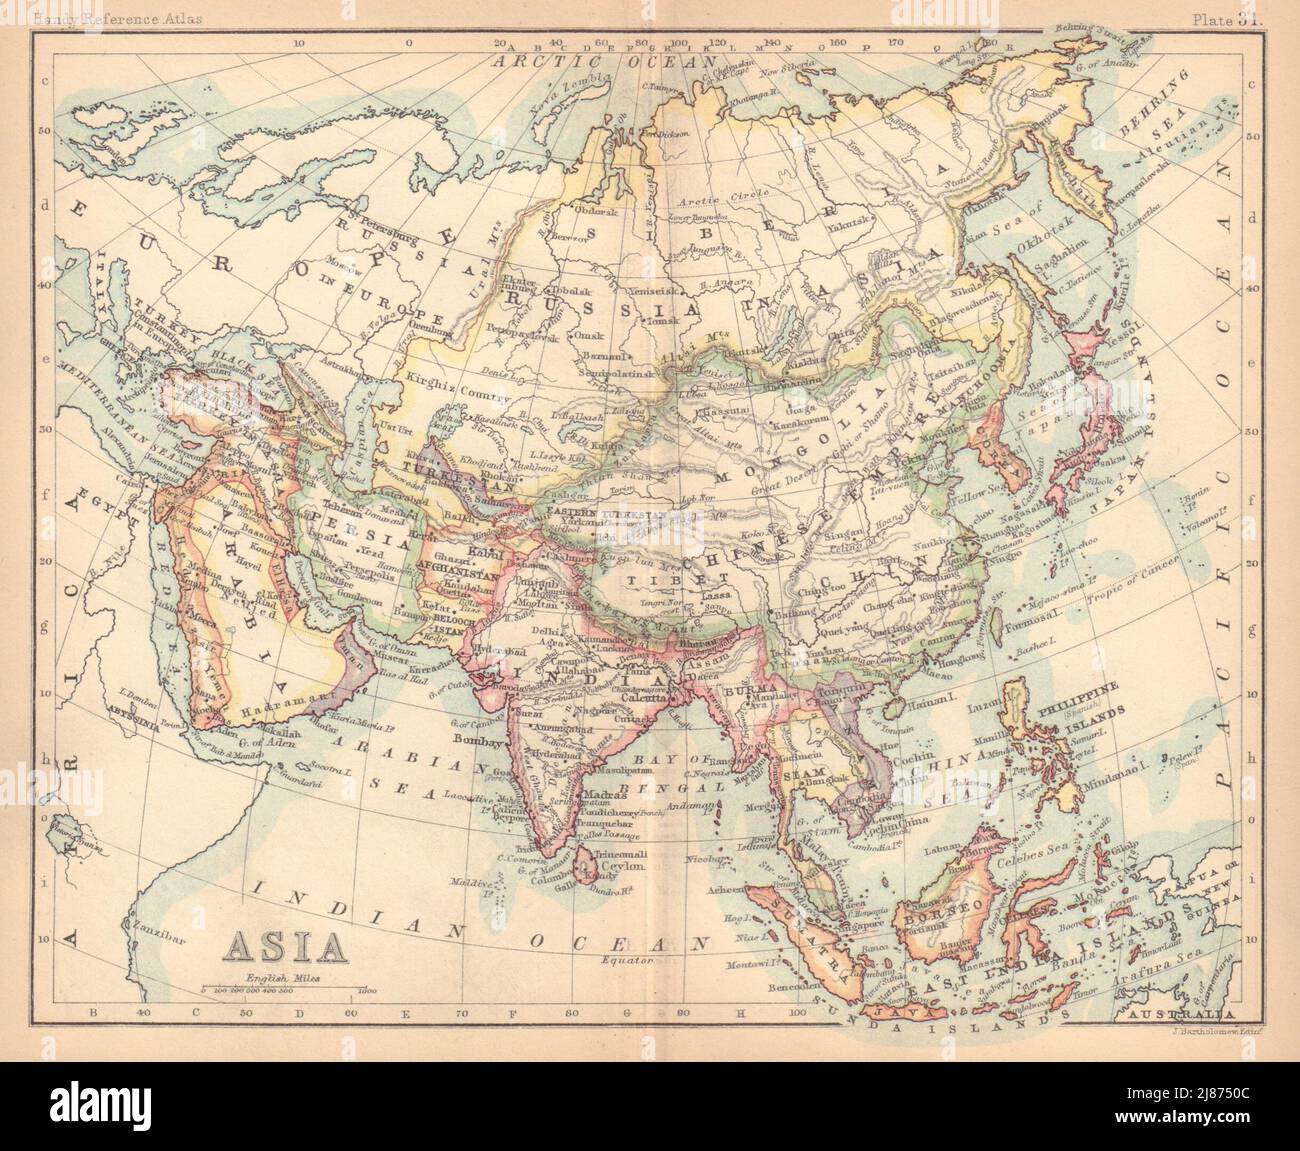 Asia. Persia Siam Anam China Corea. BARTHOLOMEW 1888 old antique map ...